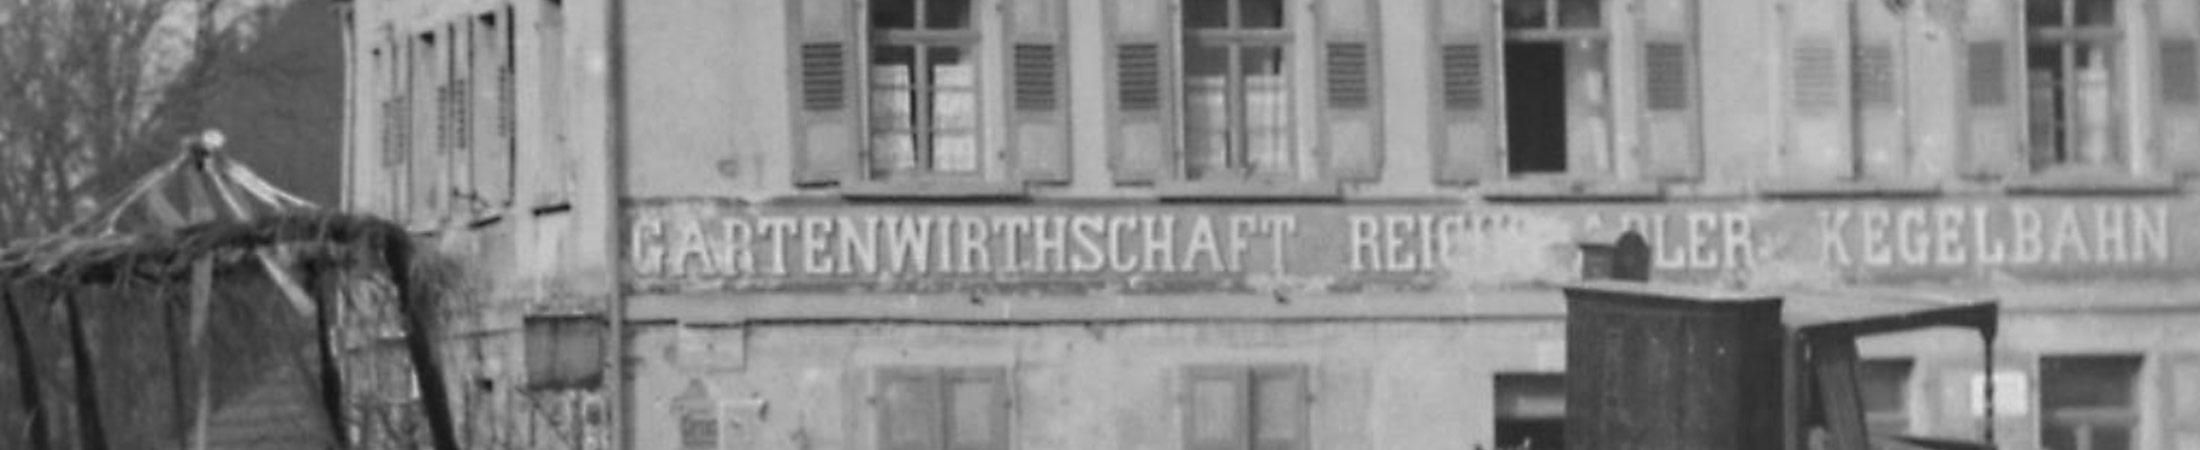 Hotel & Restaurant Reichsadler in Buchen - 111 Jahre Reichsadler